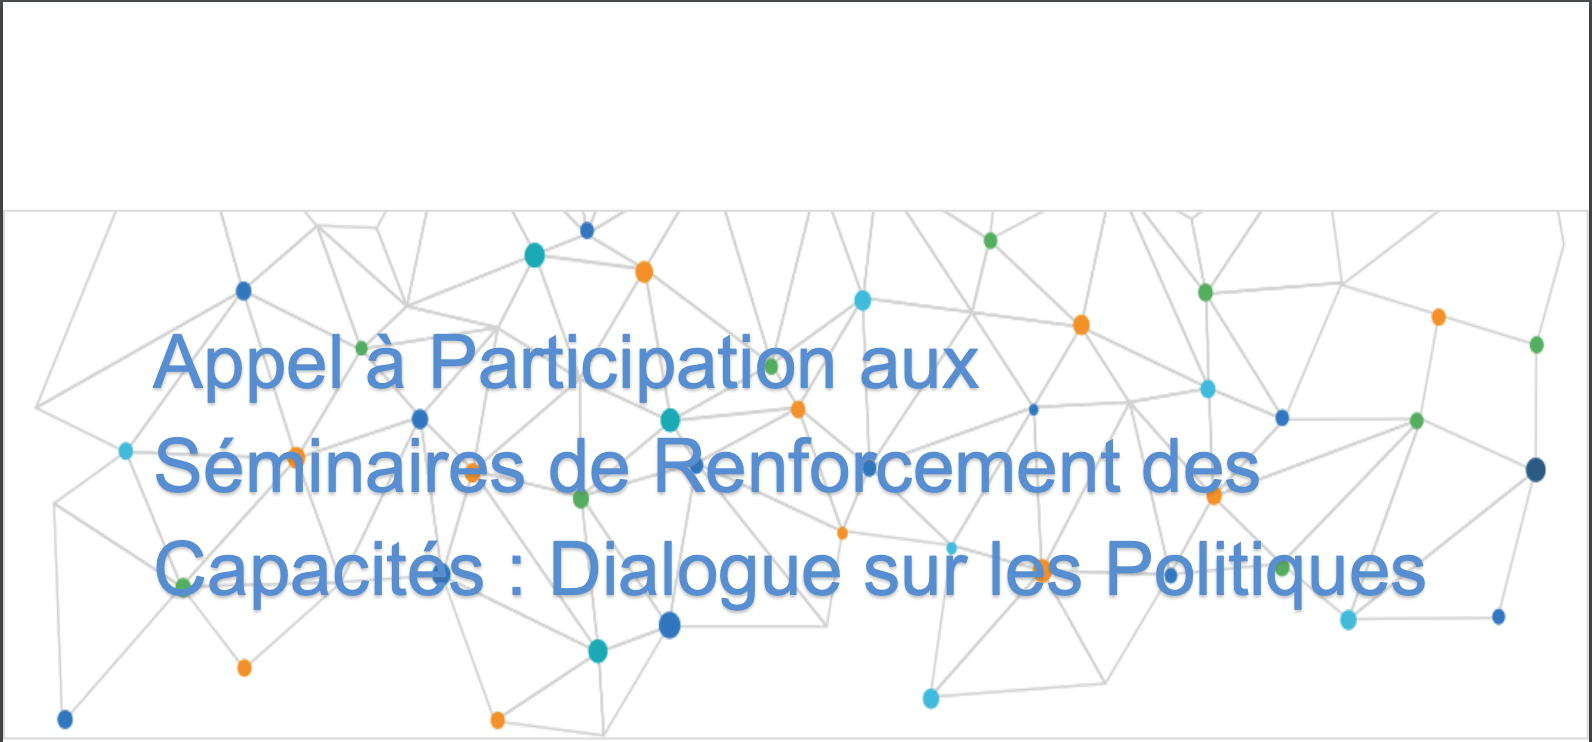 Appel à participations : Séminaires de renforcement des capacités et dialogue sur les politiques